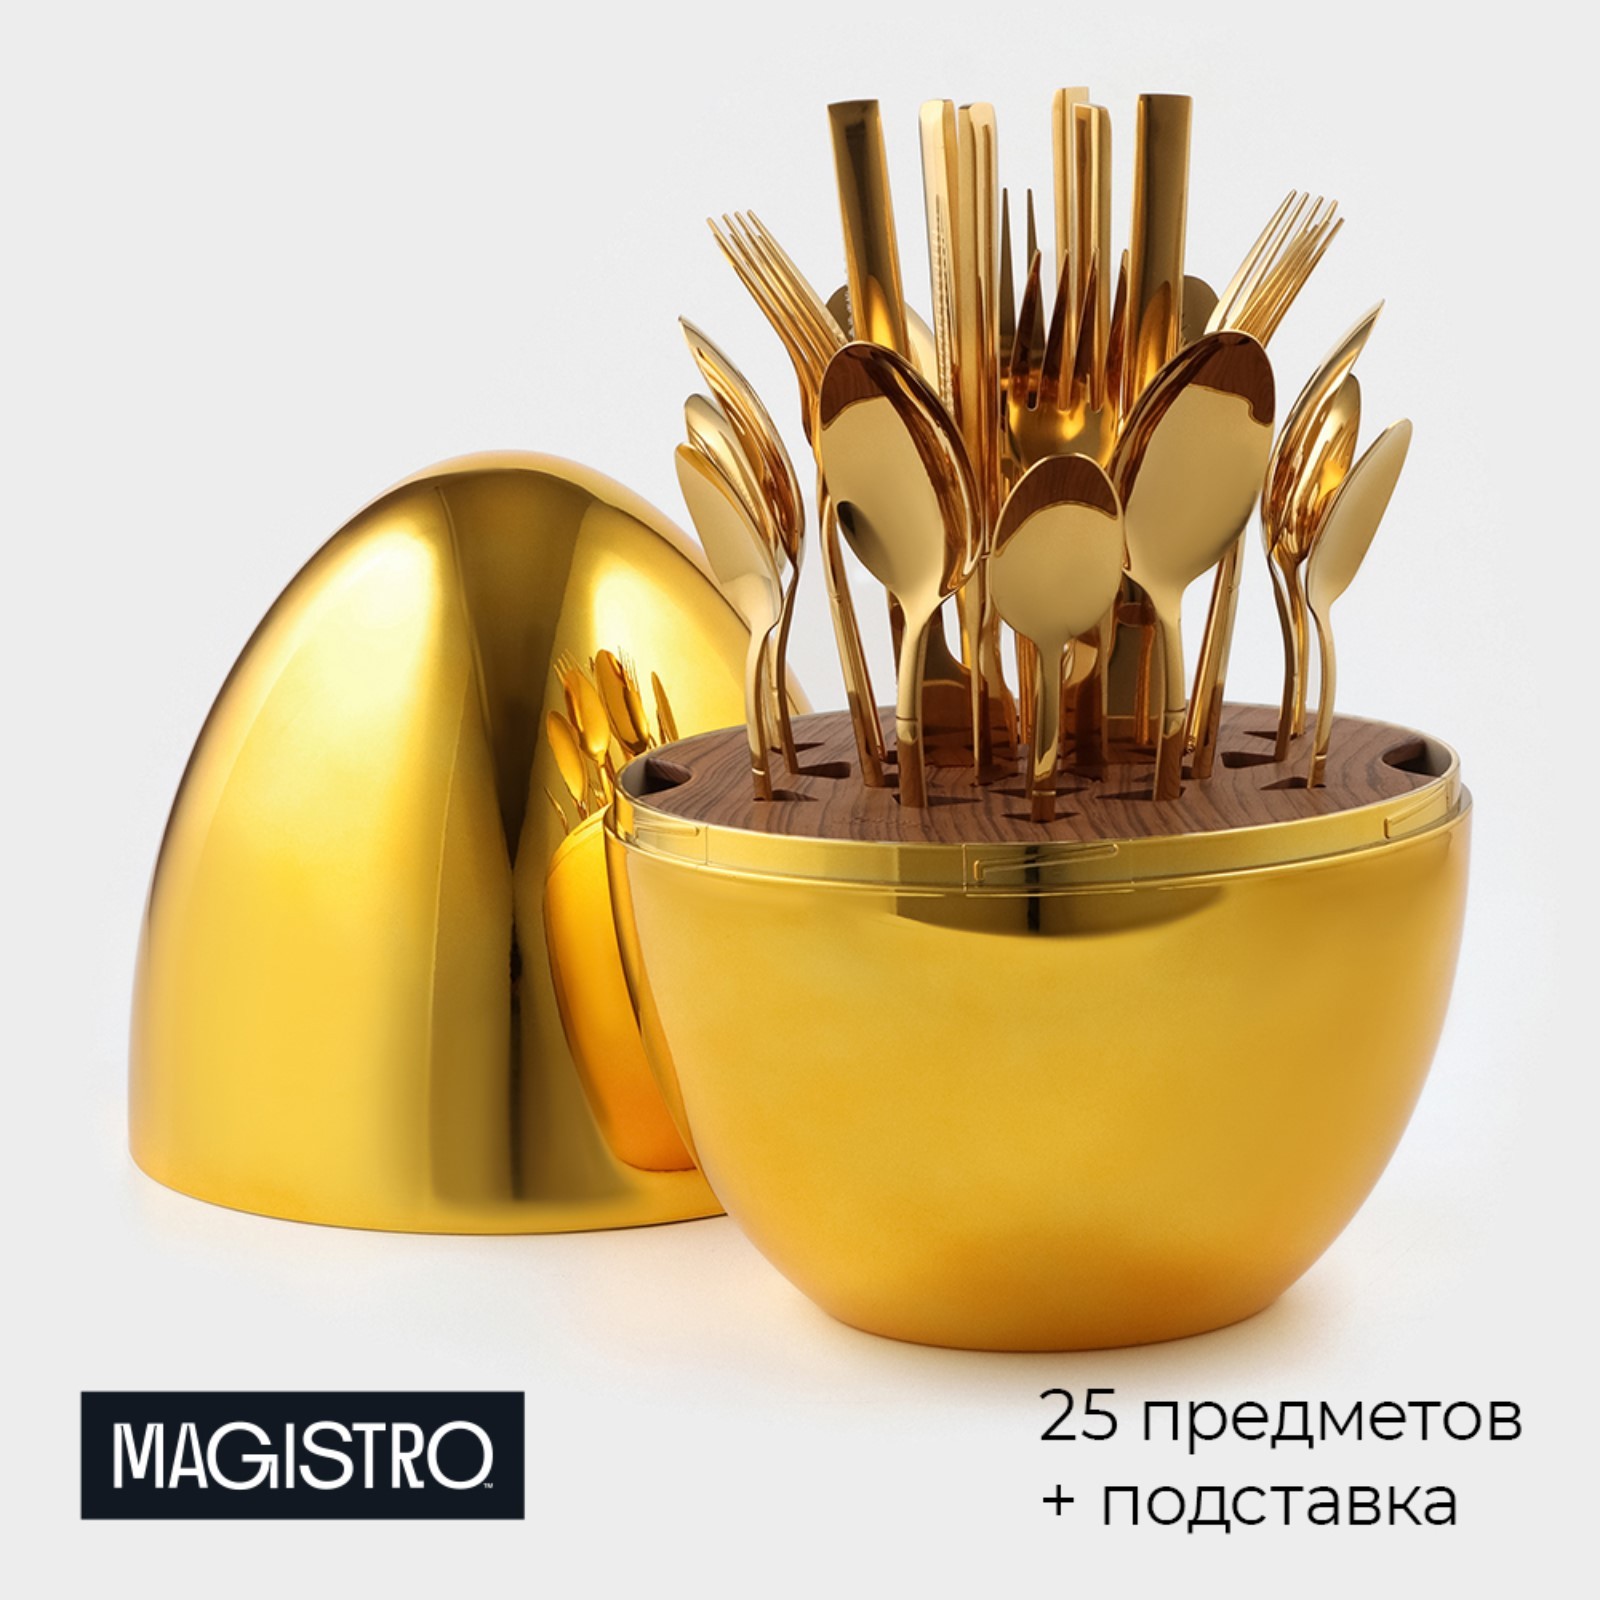 Набор столовых приборов из нержавеющей стали Magistro Silve, 24 предмета золотой